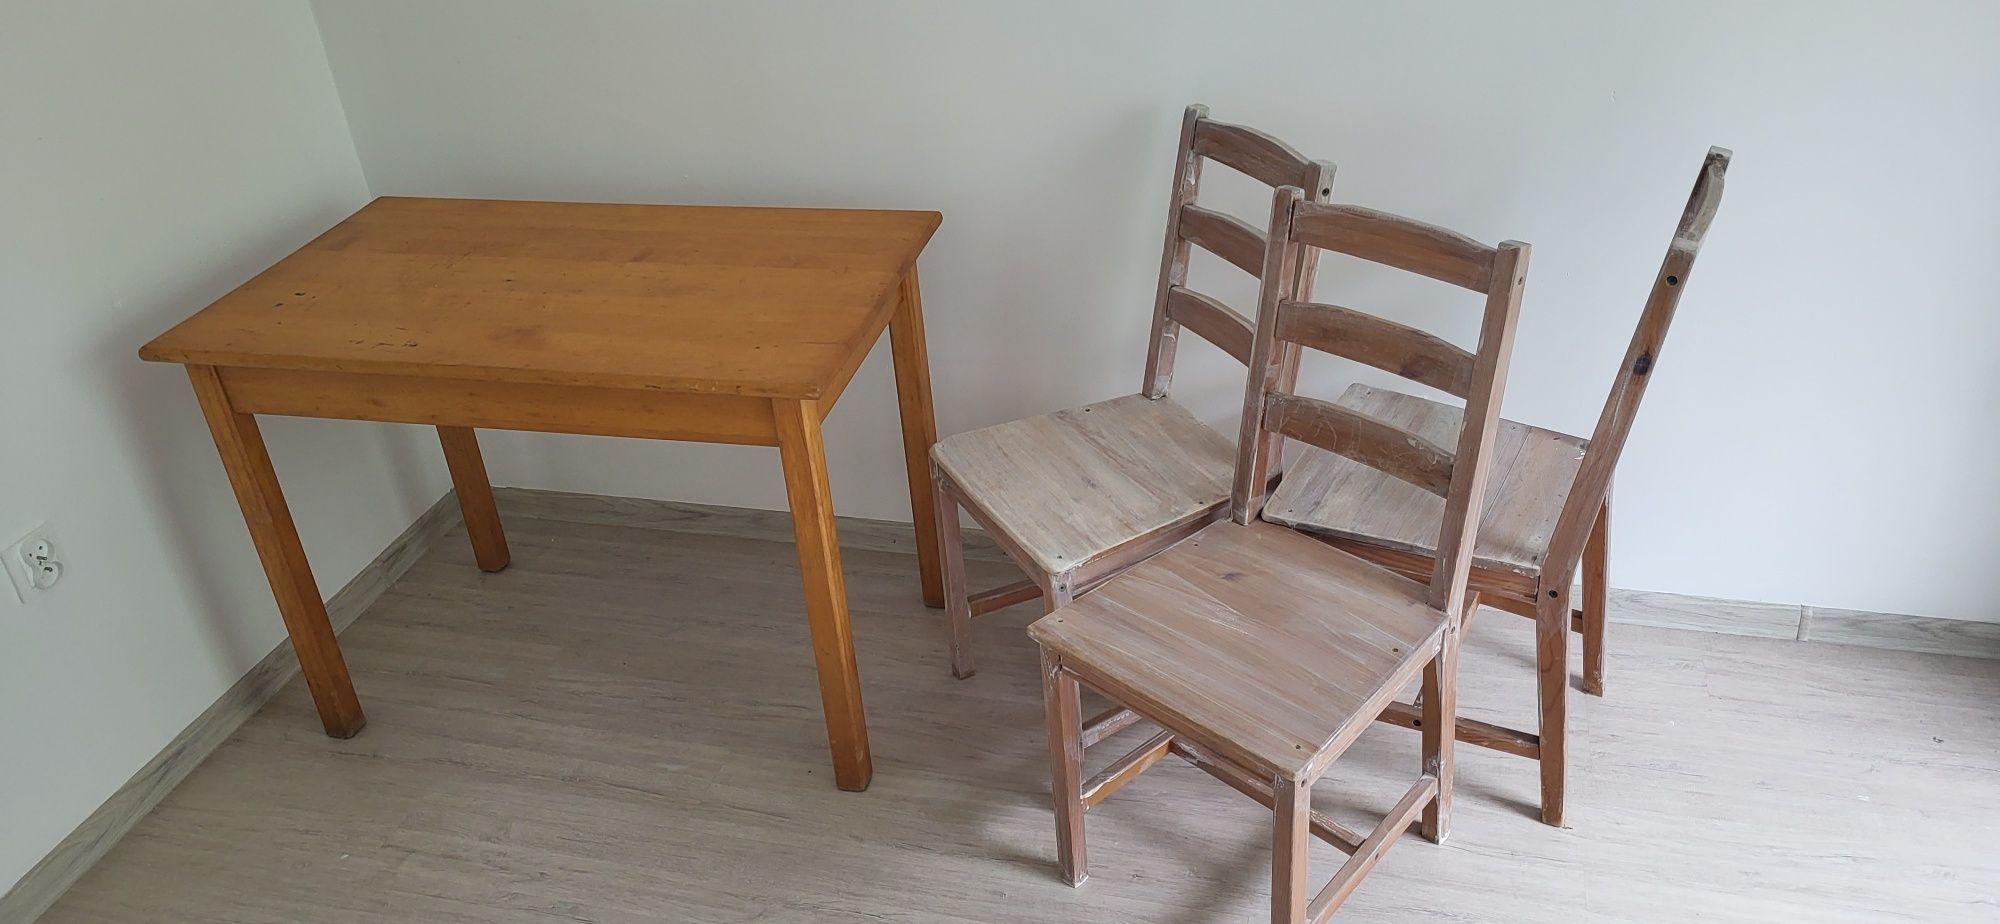 Stół i 4 krzesła drewniane. 59 x 100 cm